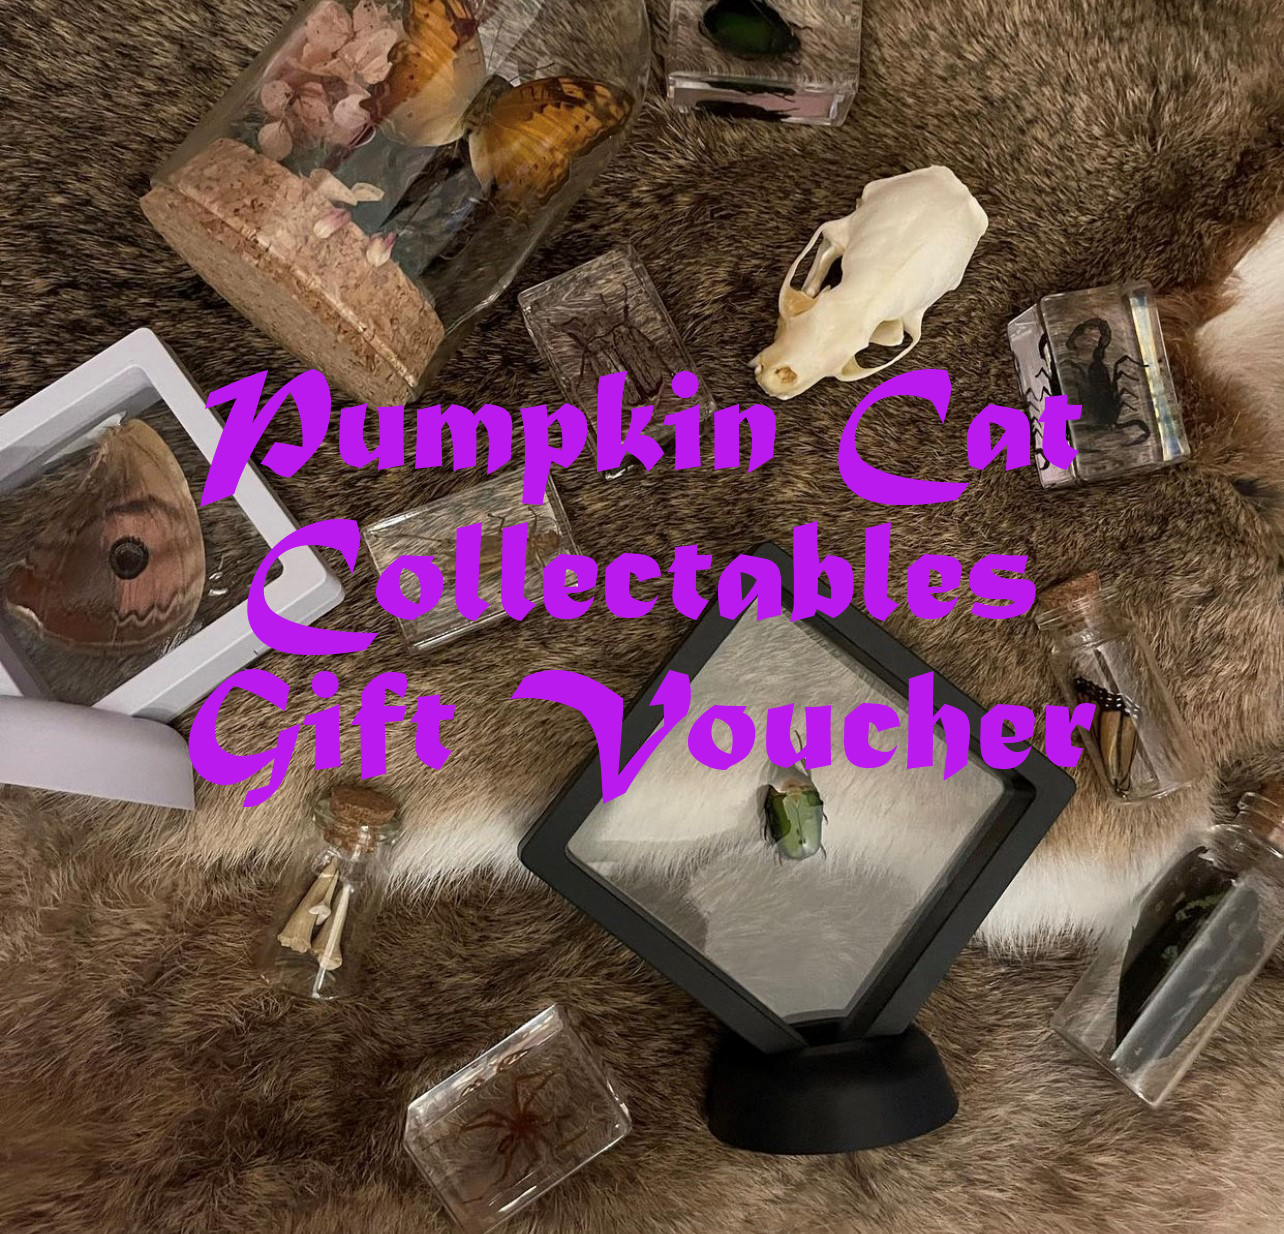 Pumpkin Cat Collectables Gift Voucher